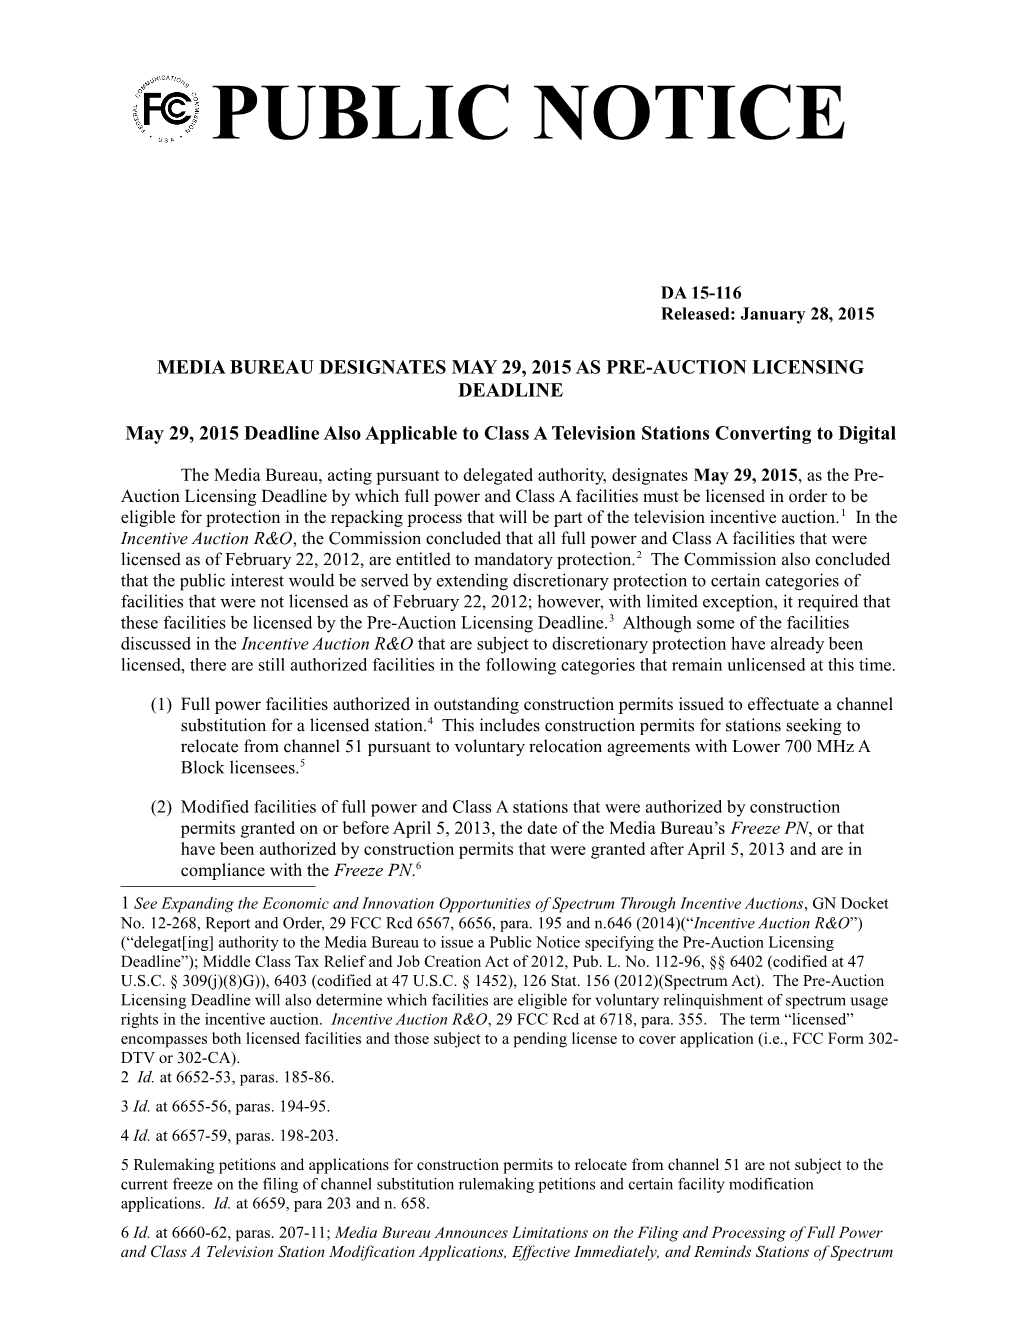 Media Bureau Designates May 29, 2015 As Pre-Auction Licensing Deadline